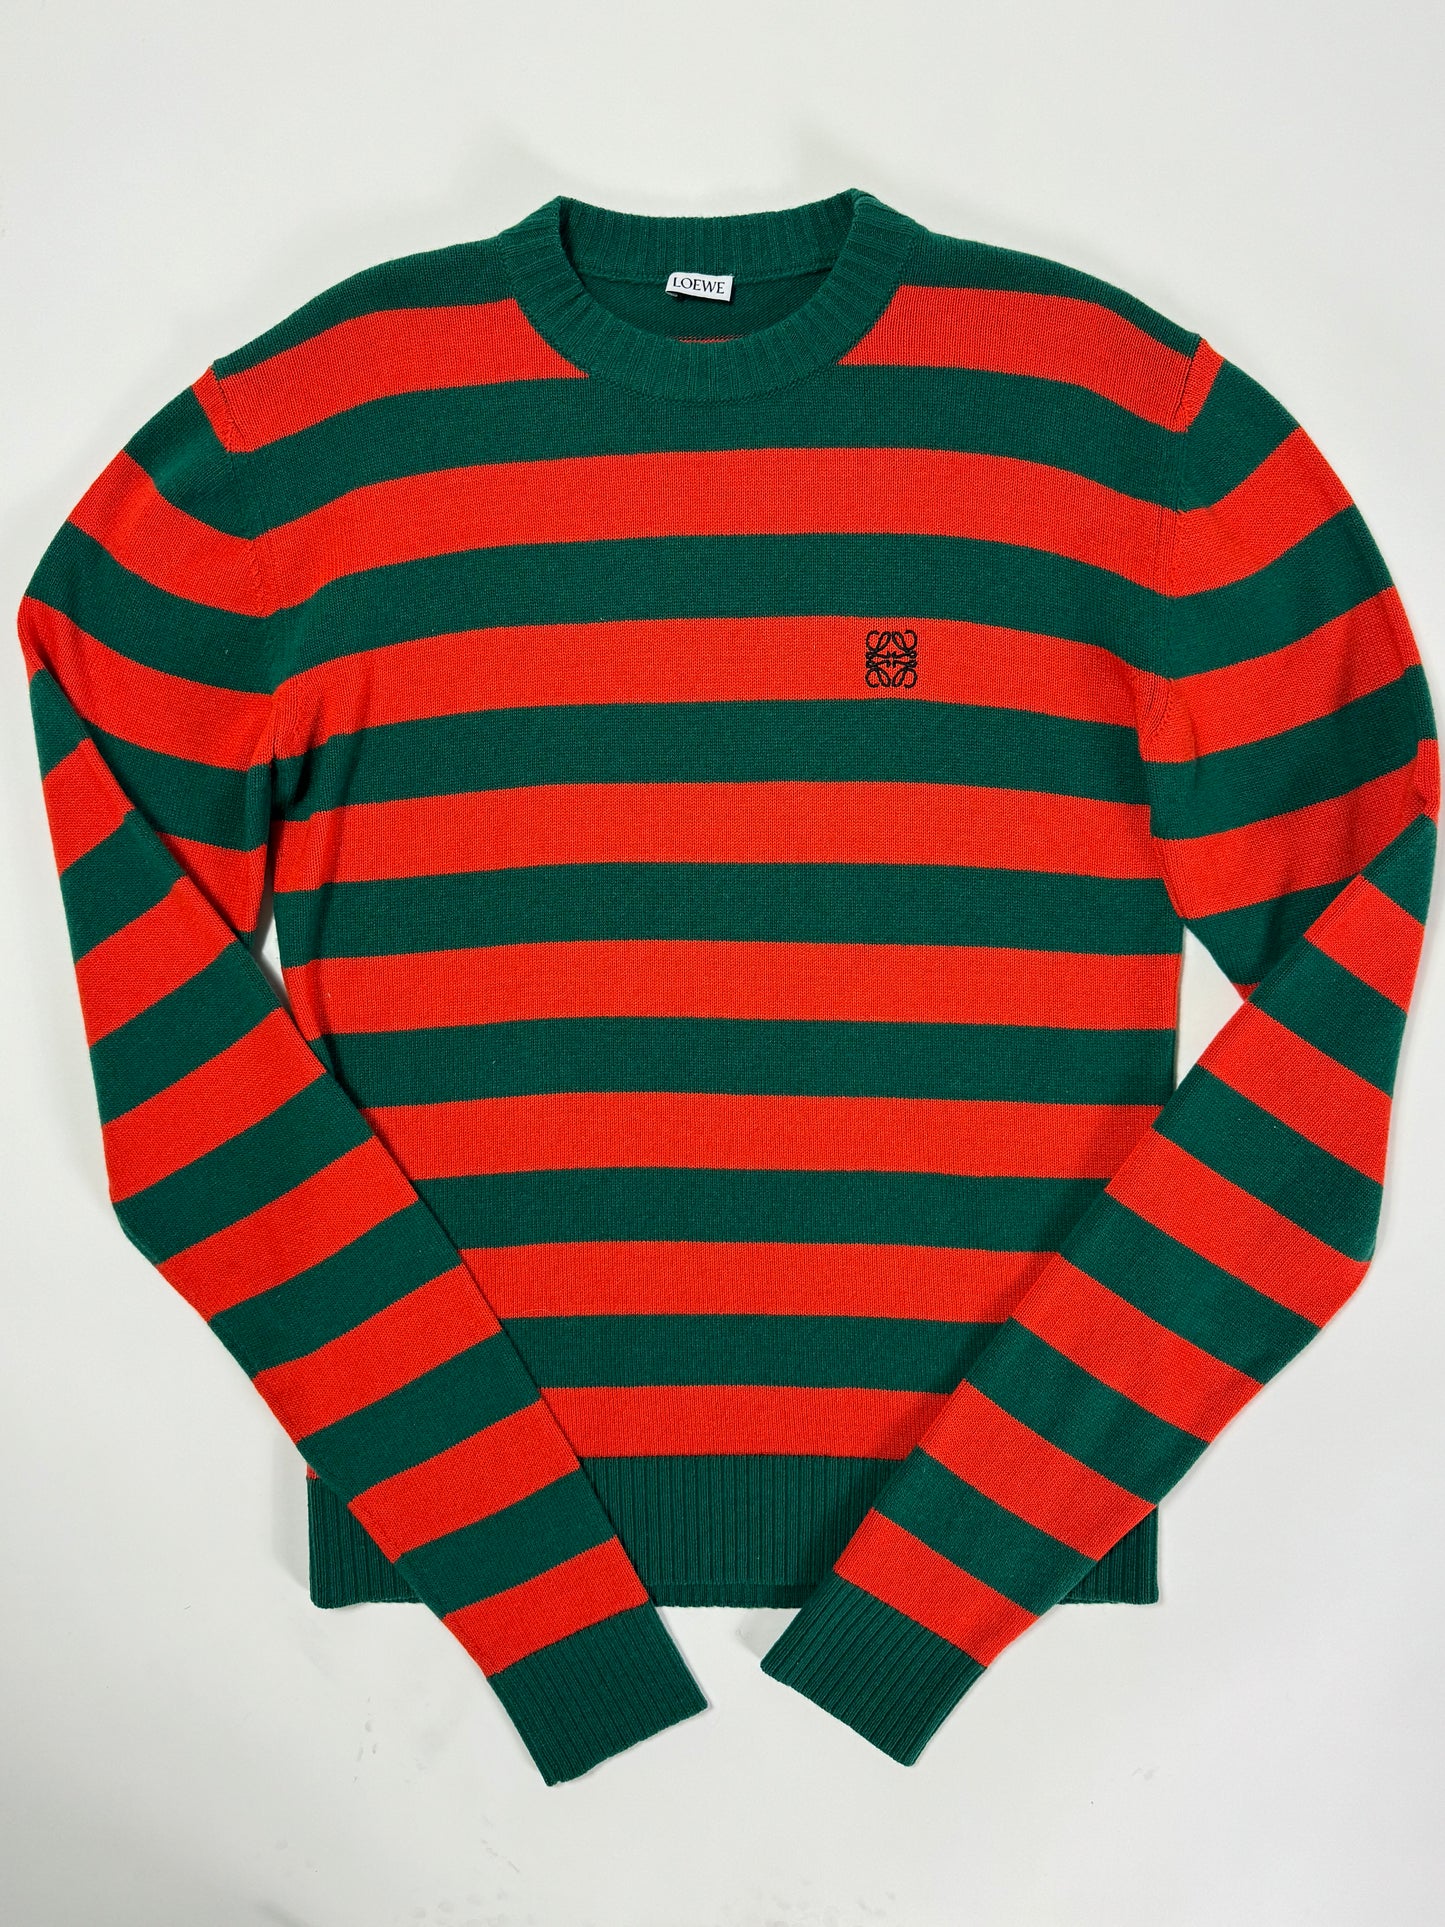 Loewe Striped Wool Sweater